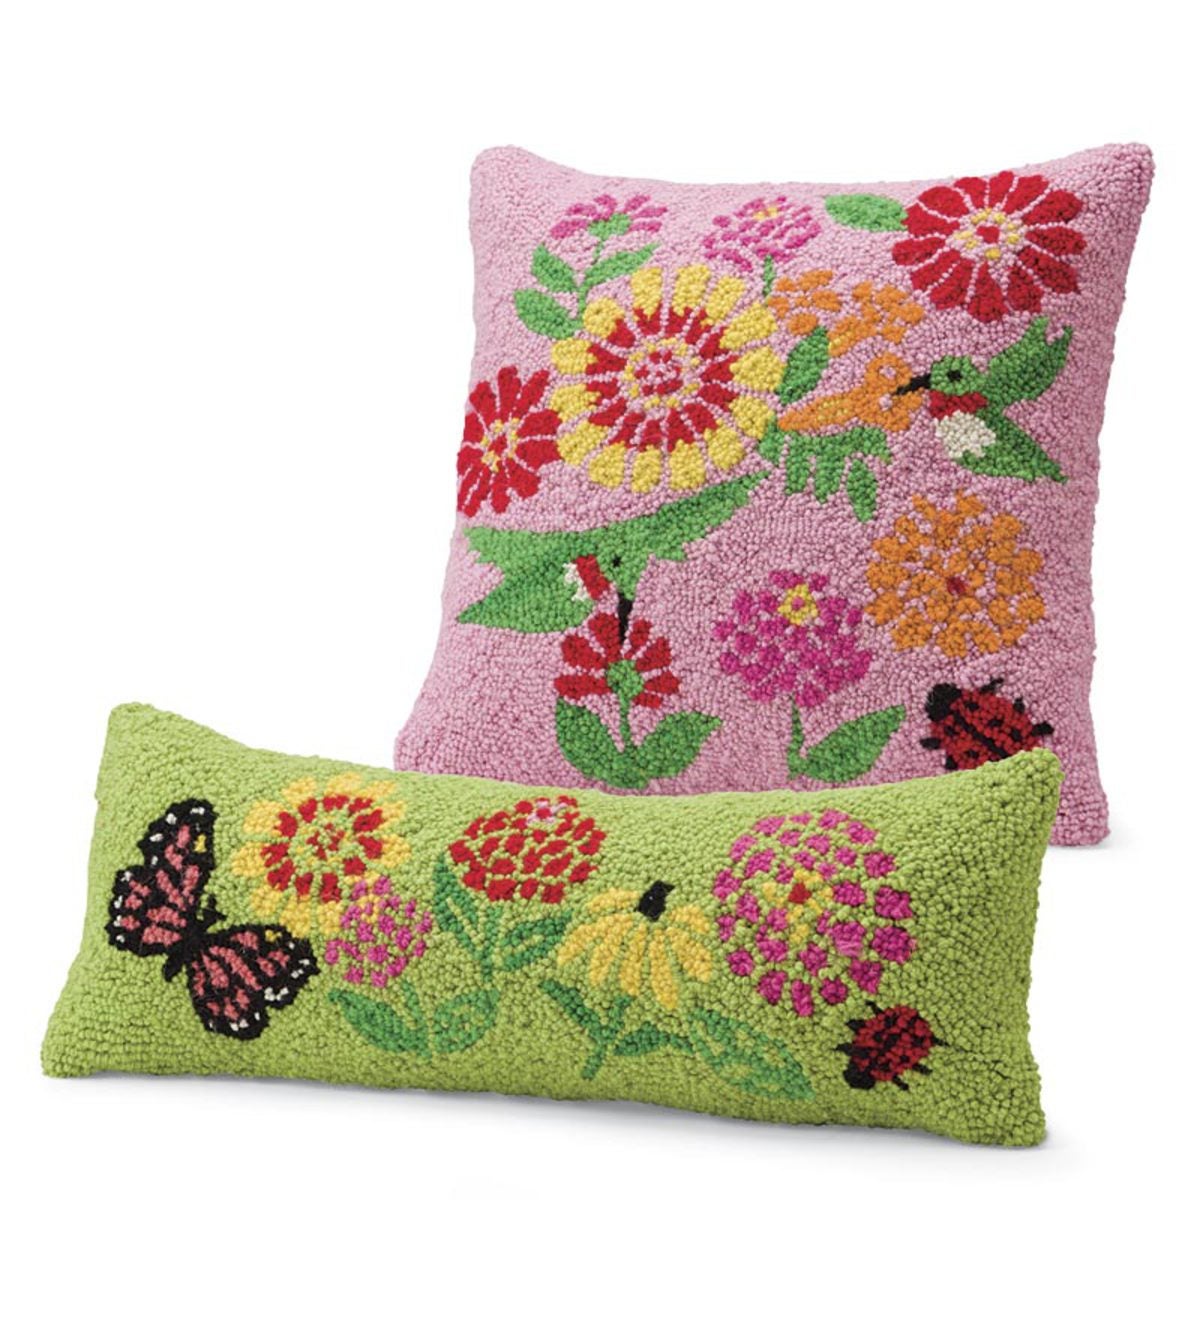 Set Of 2 Pillows, 1 Pink Square and 1 Green Lumbar